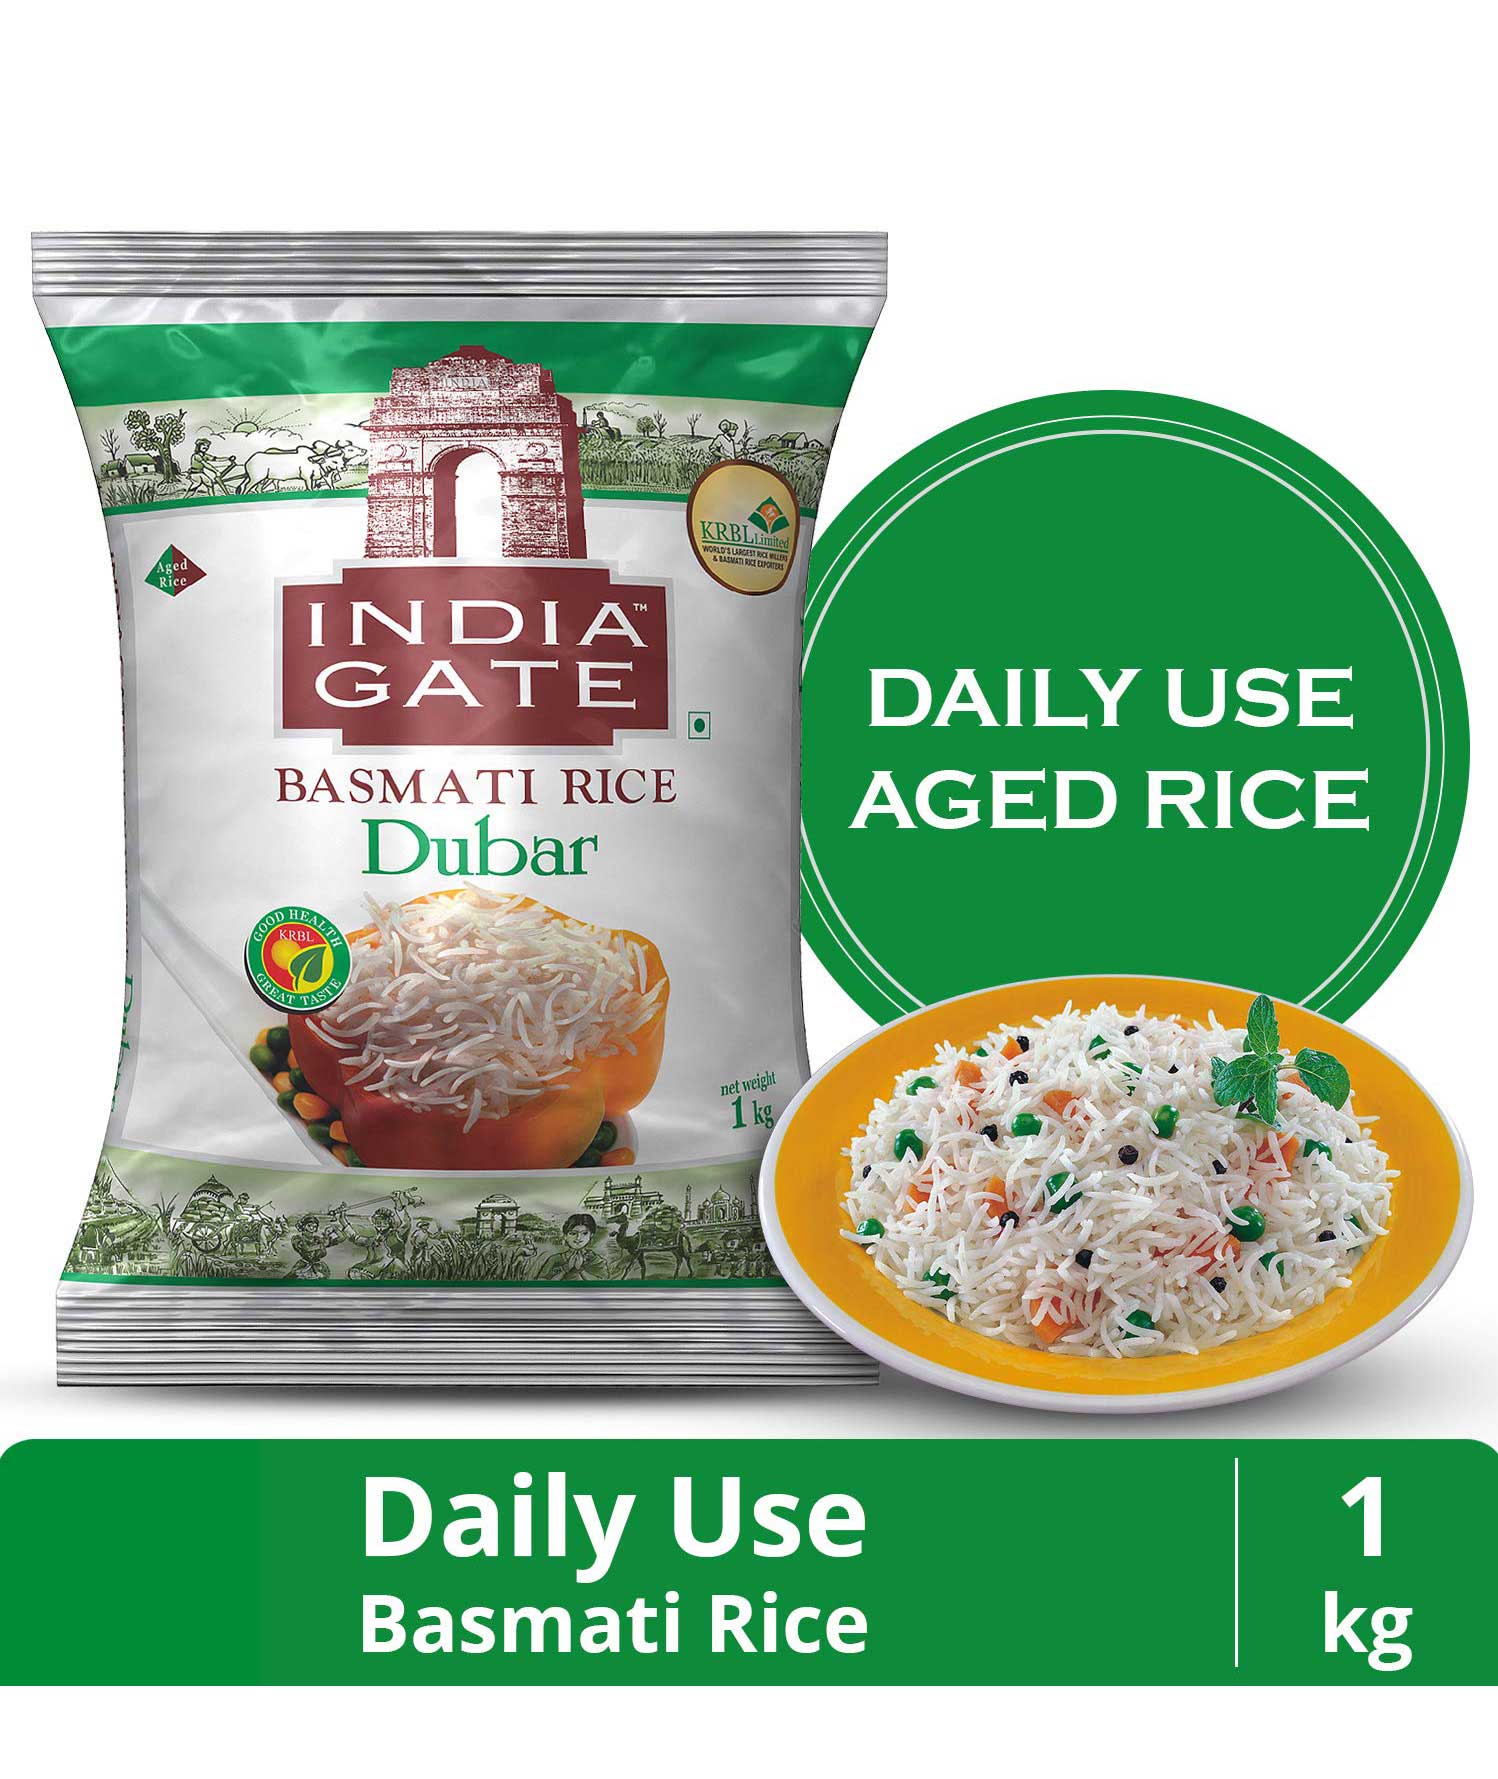 India Gate Basmati Rice Dubar, 1kg